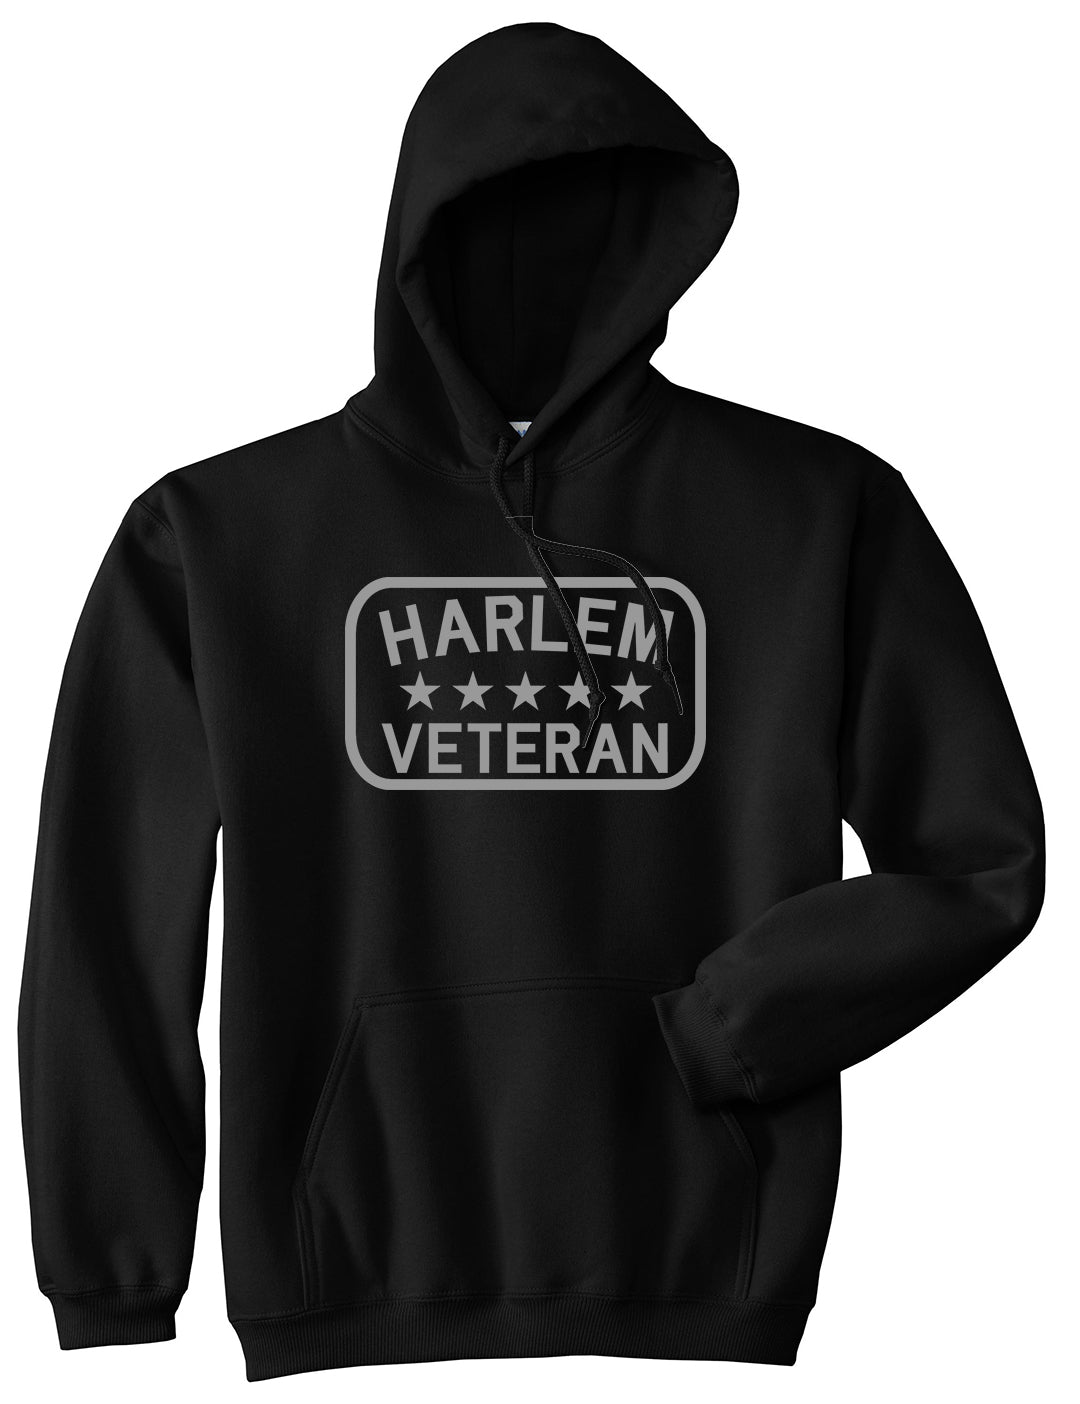 Harlem Veteran Mens Pullover Hoodie Black